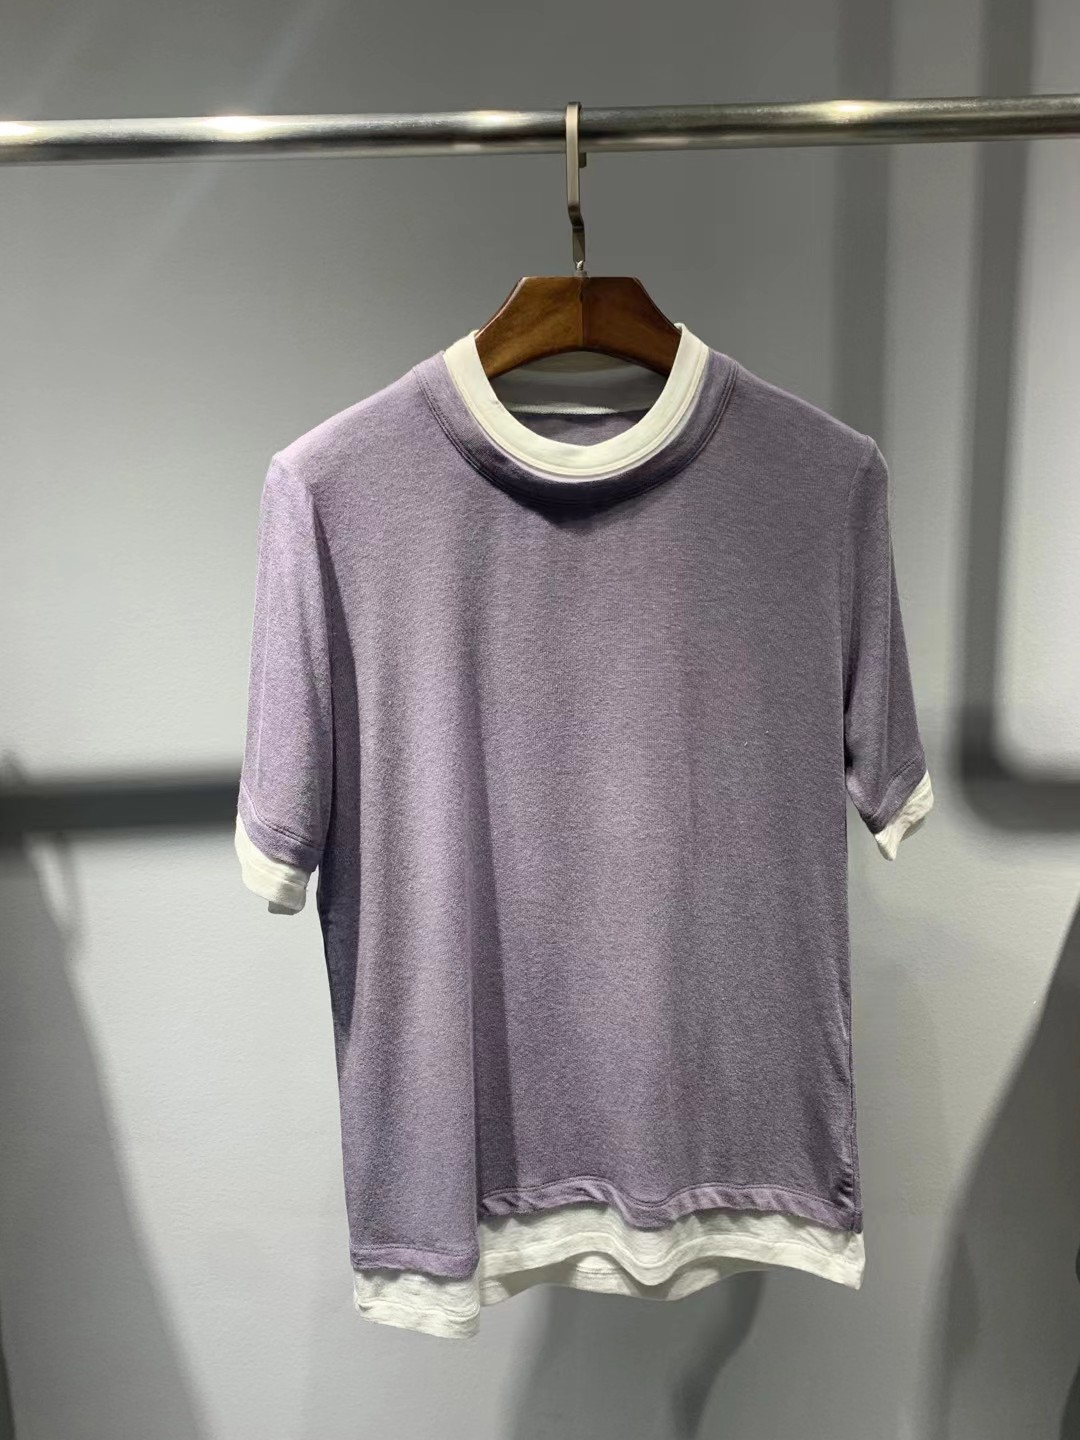 AlEXANDER WANG /羊绒莫代尔假两件拼色短袖T恤/颜色：灰色，白色，咖色，紫色， 黑色/码数SML